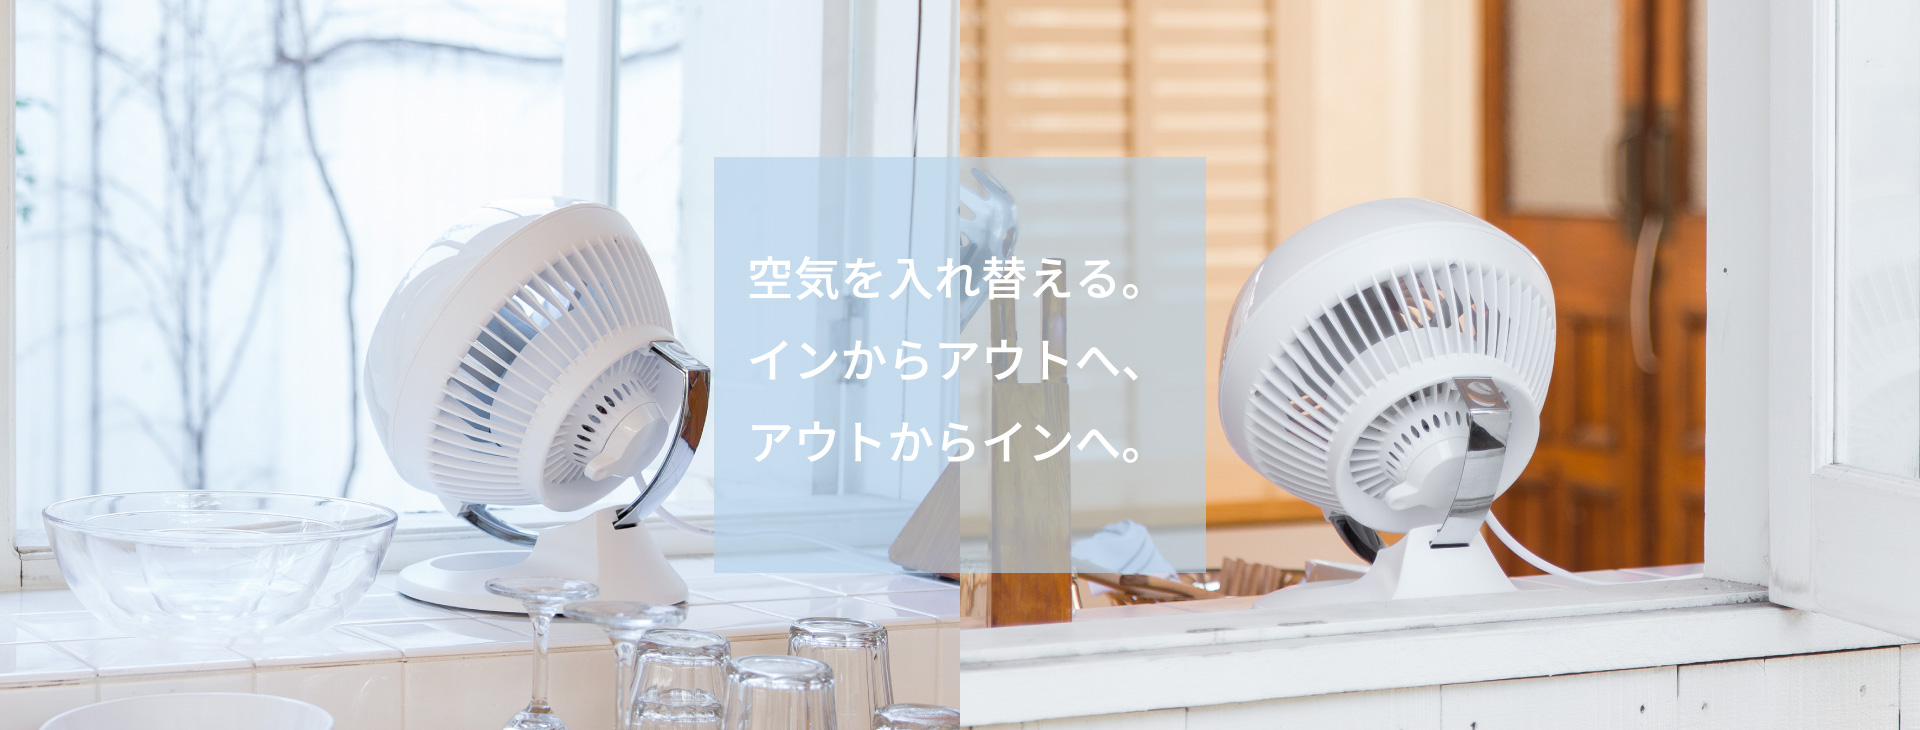 冷暖房/空調 扇風機 360-JP 白 - VORNADO